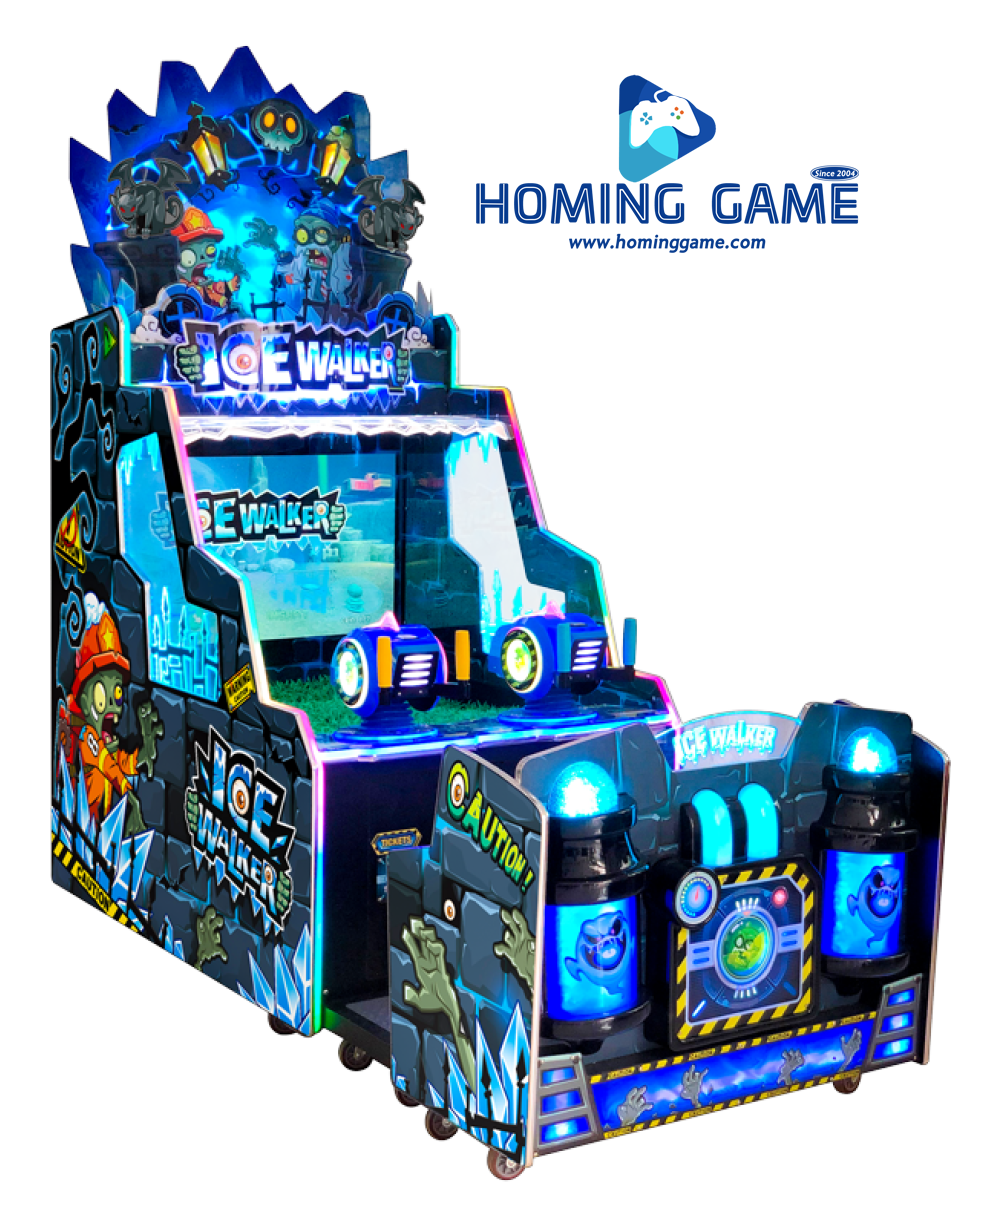 Ice walker 2,ice walker 2 redemption game machine,lottery game machine,game machine,arcade game machine,coin operated game machine,amusement machine